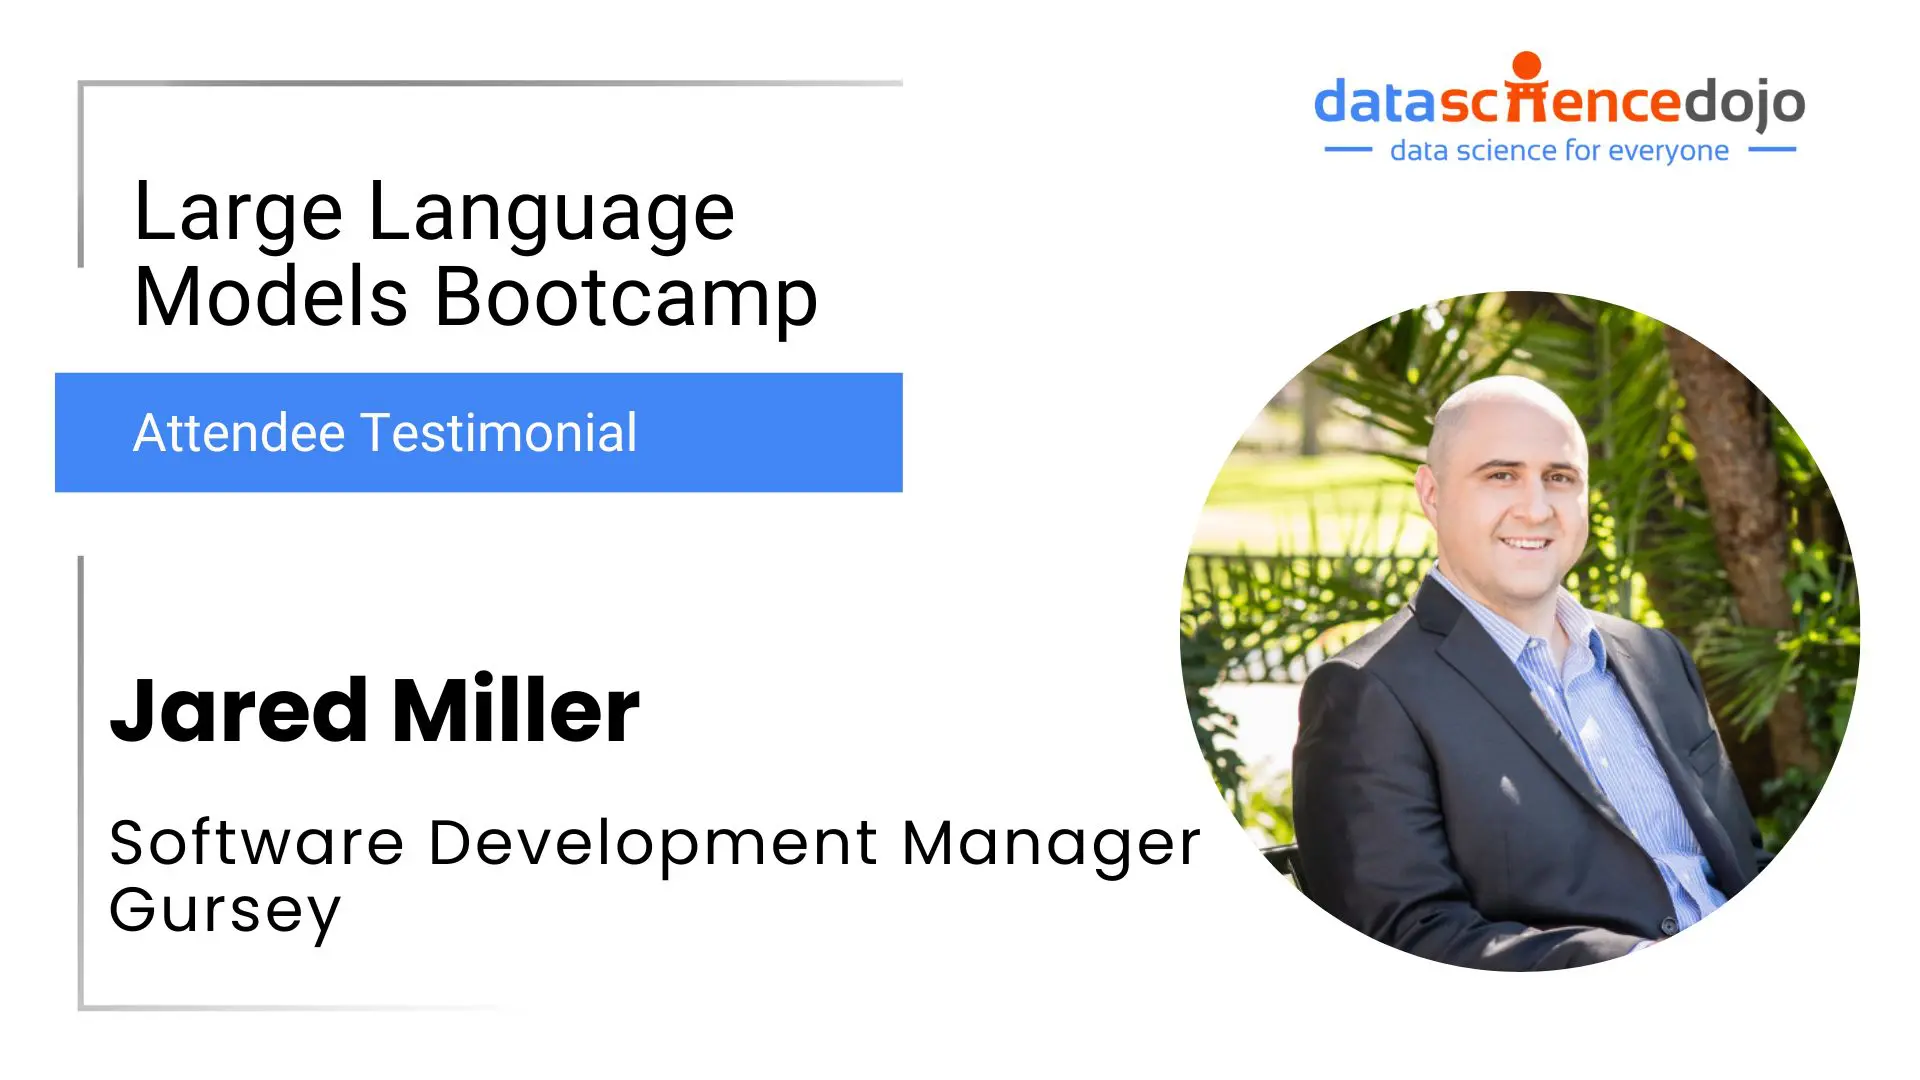 Large Language Models Bootcamp - Jared Miller